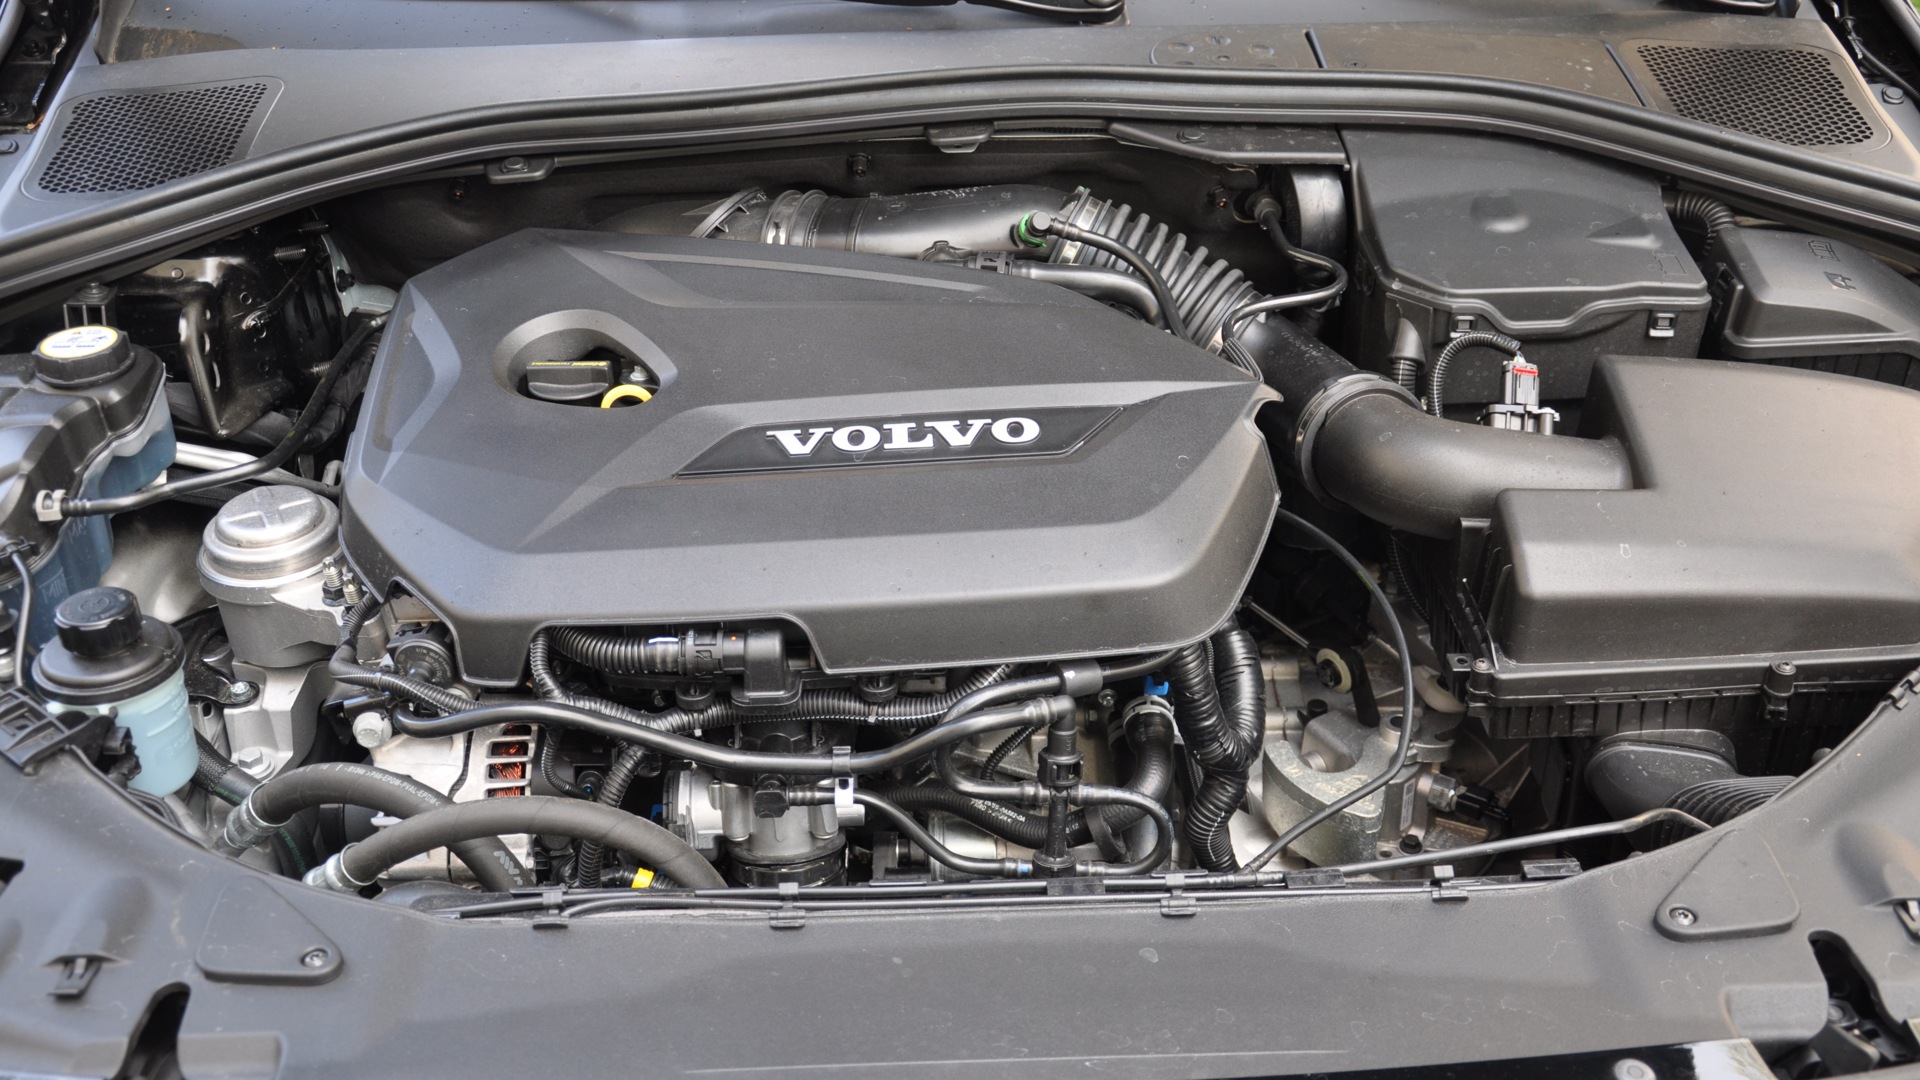 Volvo s60 1.6. Вольво s60 1.6. Двигатель Вольво s60 1,6. Мотор Вольво s60 1.6 турбо. Вольво s60 под капотом.